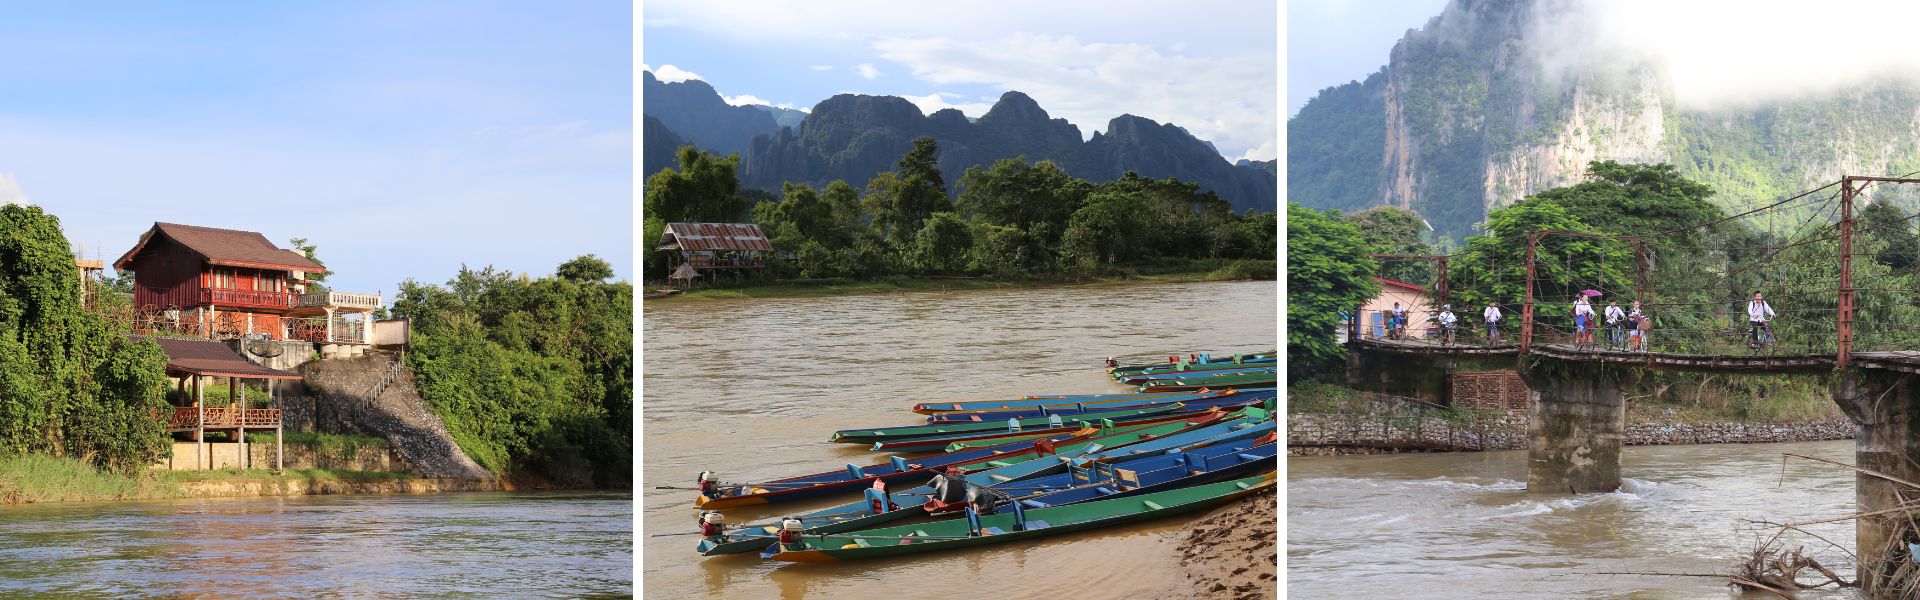 Vang Vieng: Sehenswürdigkeiten und Aktivitäten  | Laos Reisen